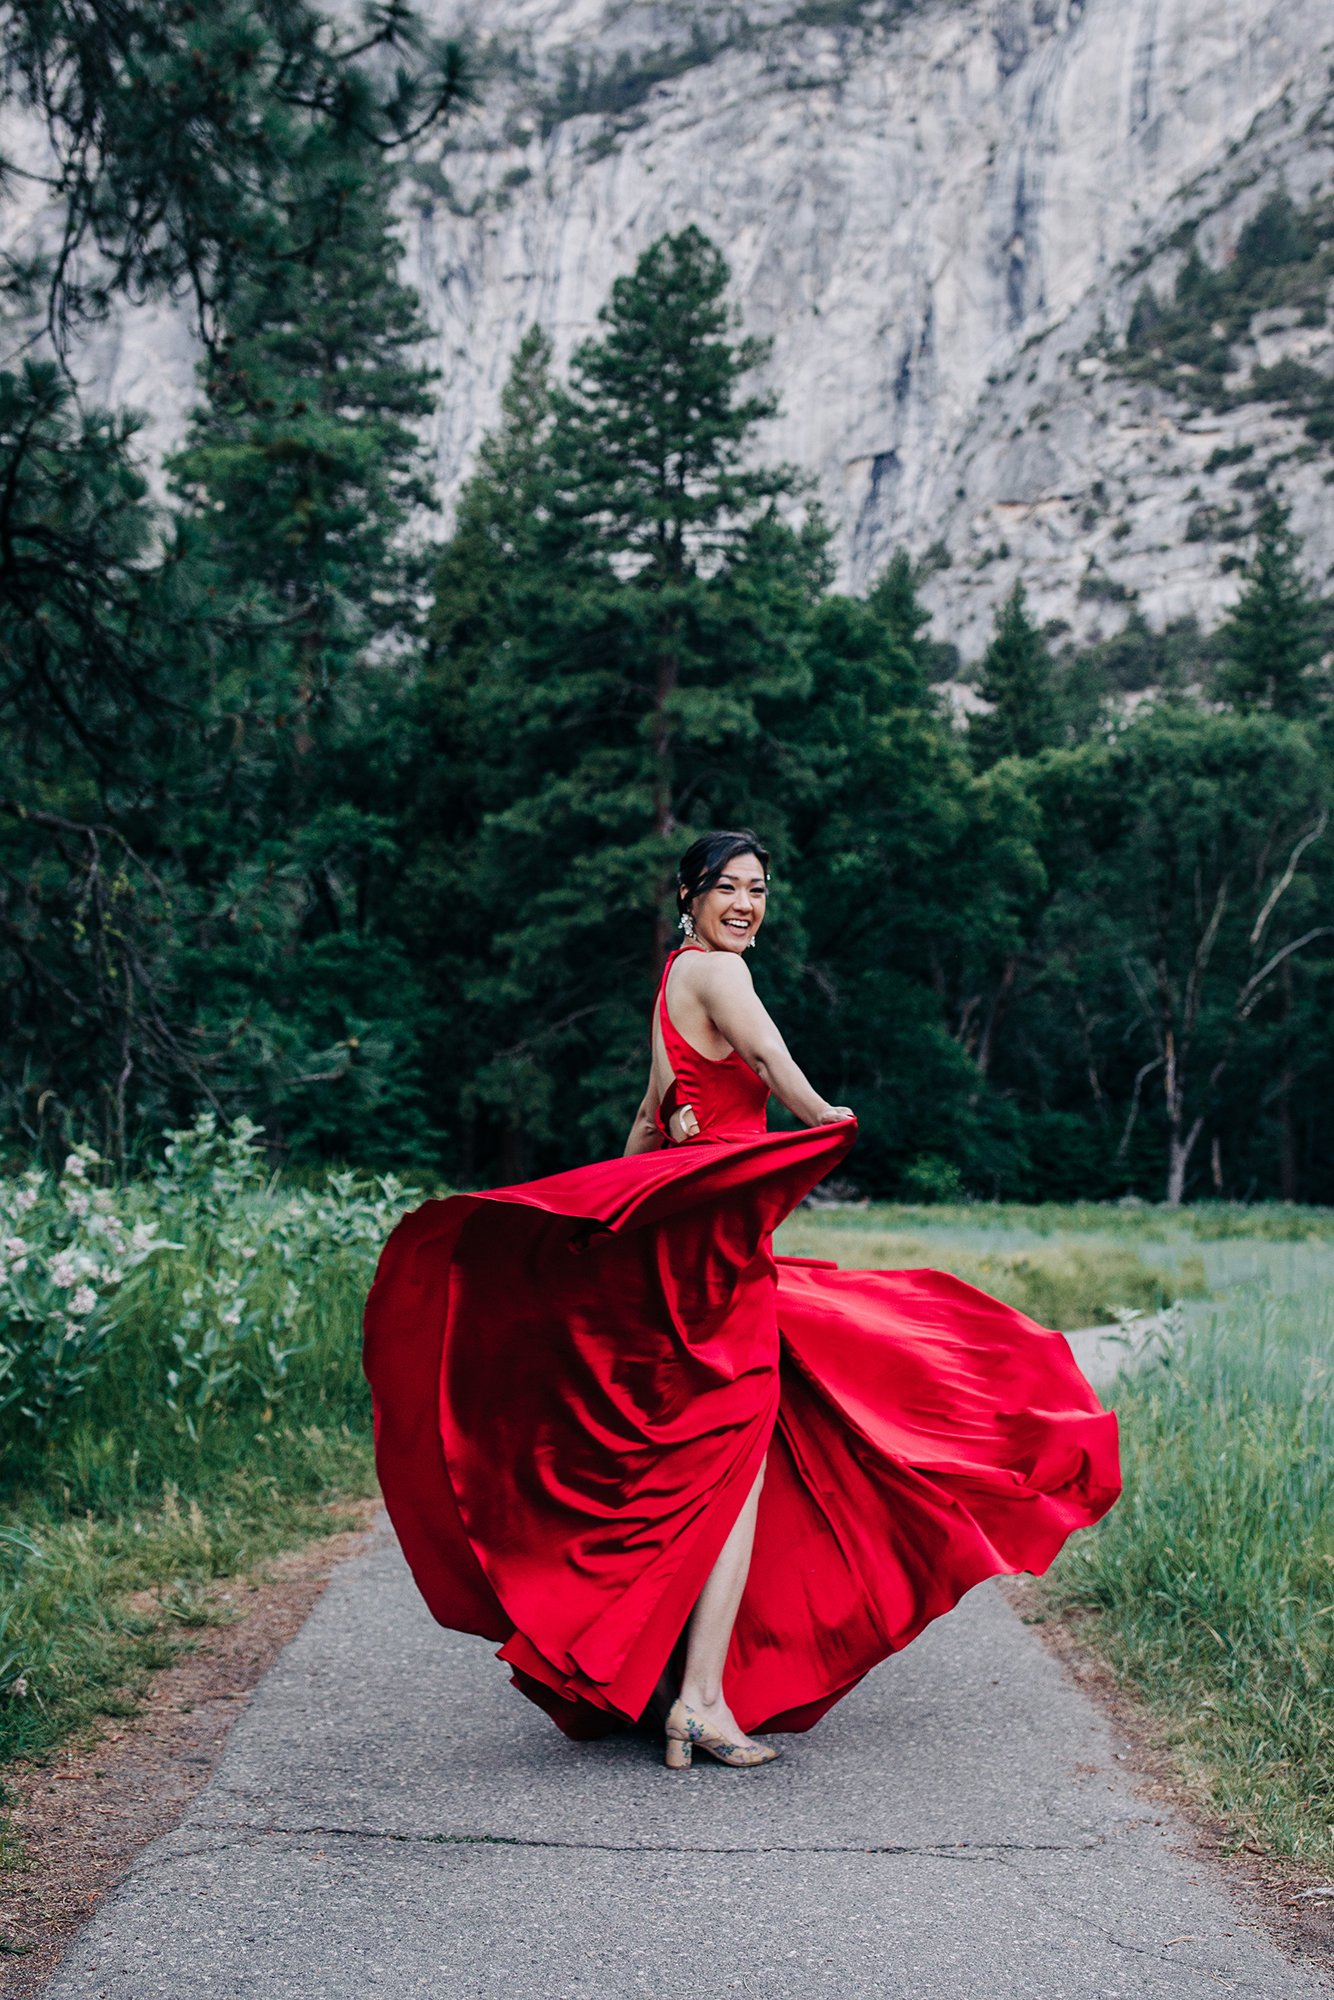 Yooree dances wearing a red dress in Yosemite.